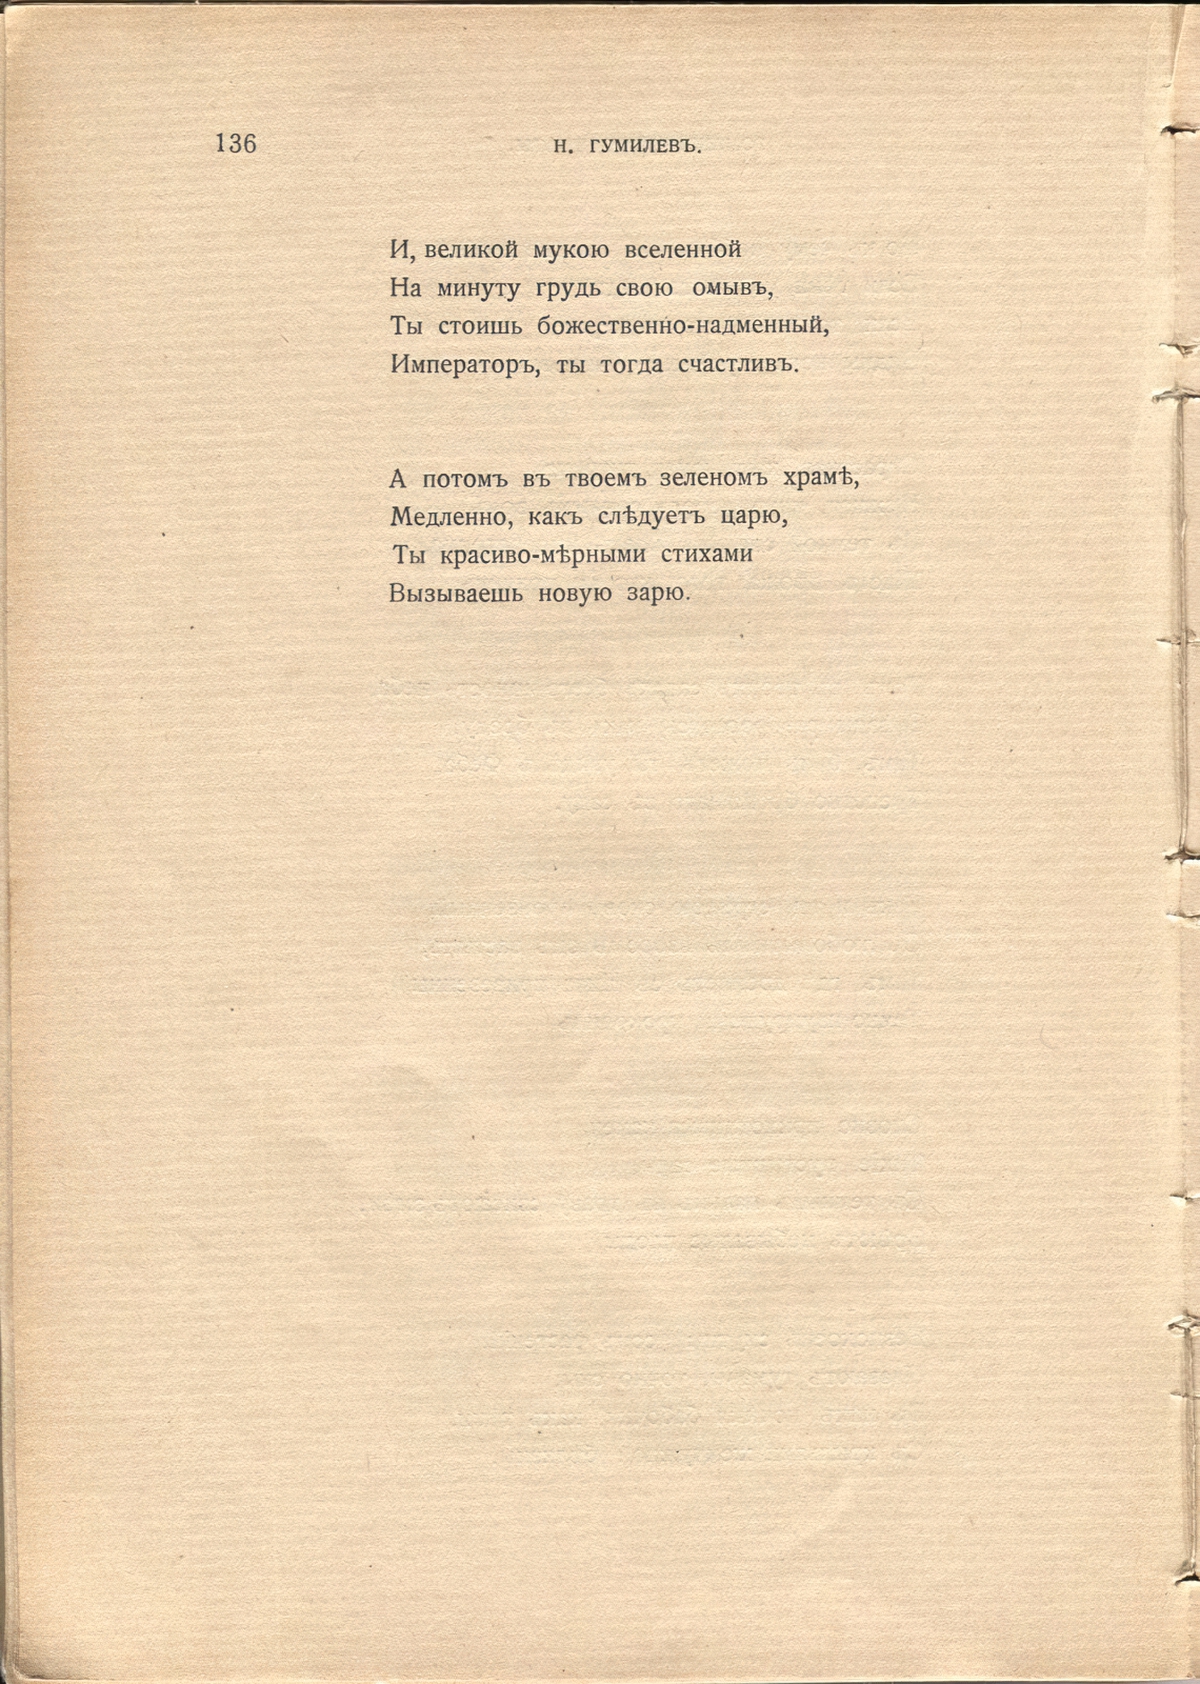 Жемчуга (1910). «Император с профилем орлиным…». Страница 136